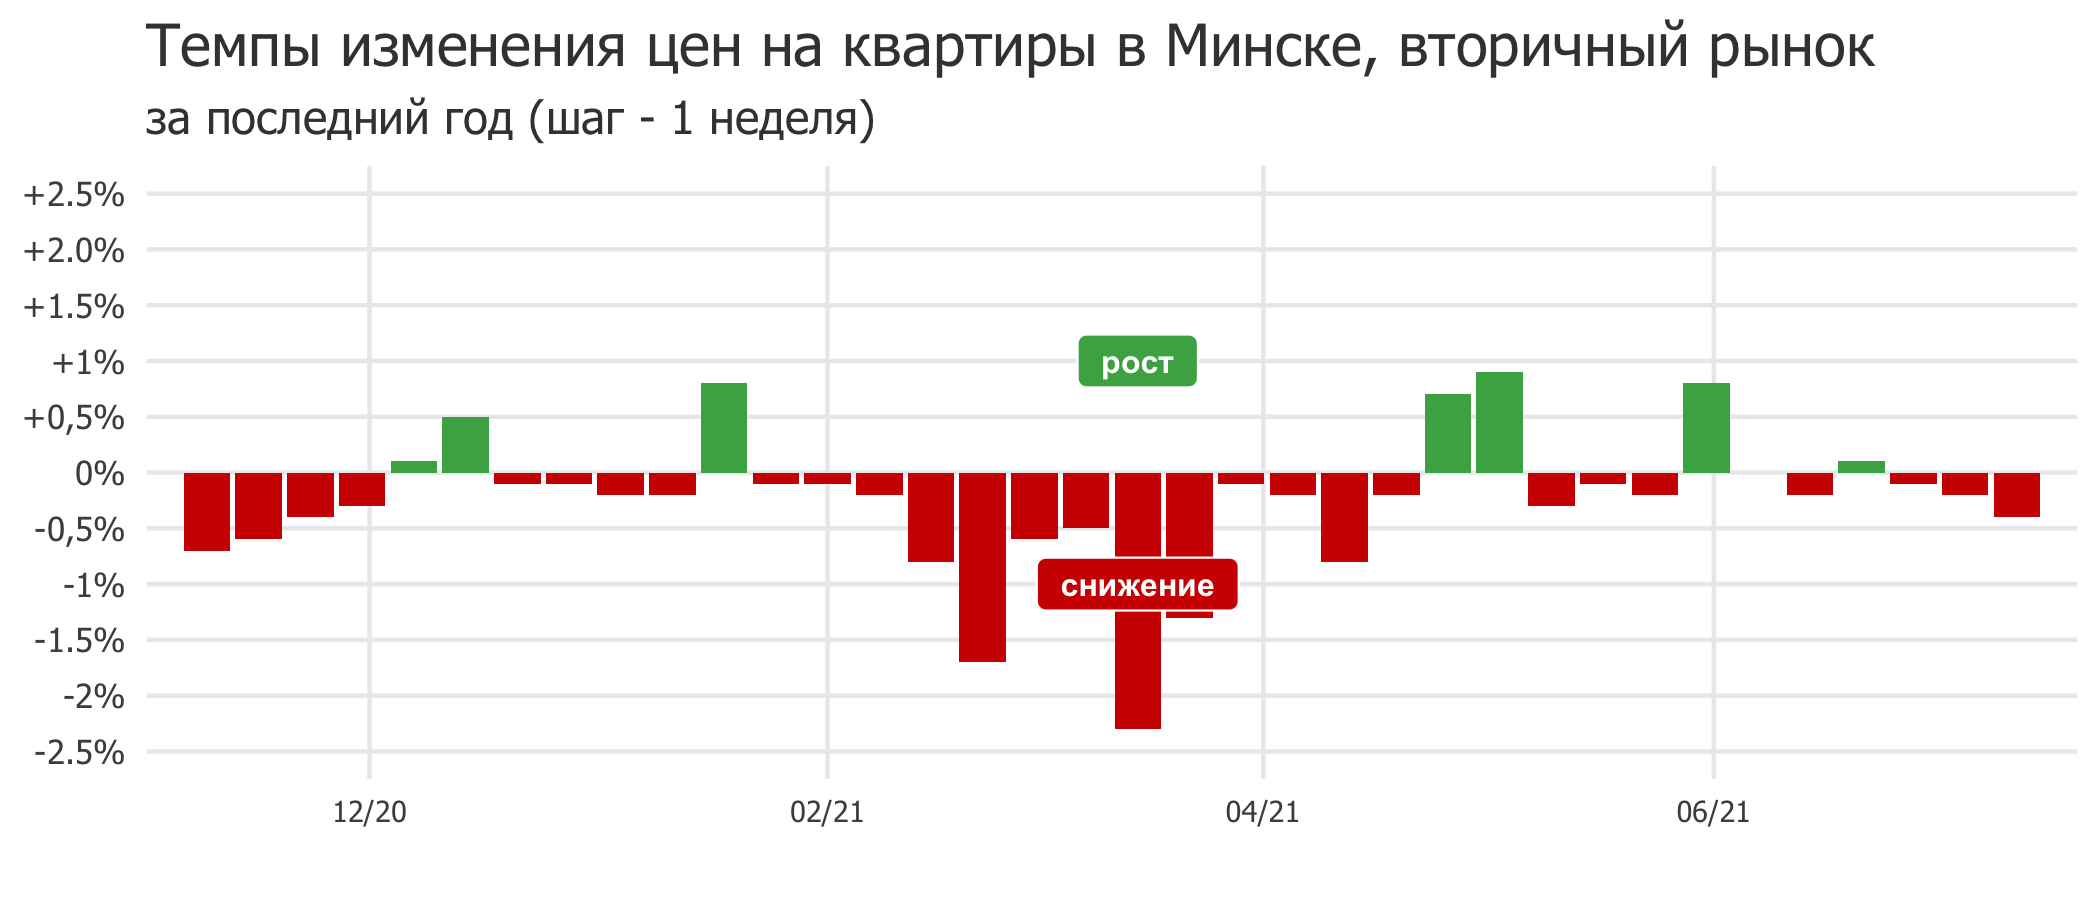 Мониторинг цен предложения квартир в Минске за 5-12 июля 2021 года